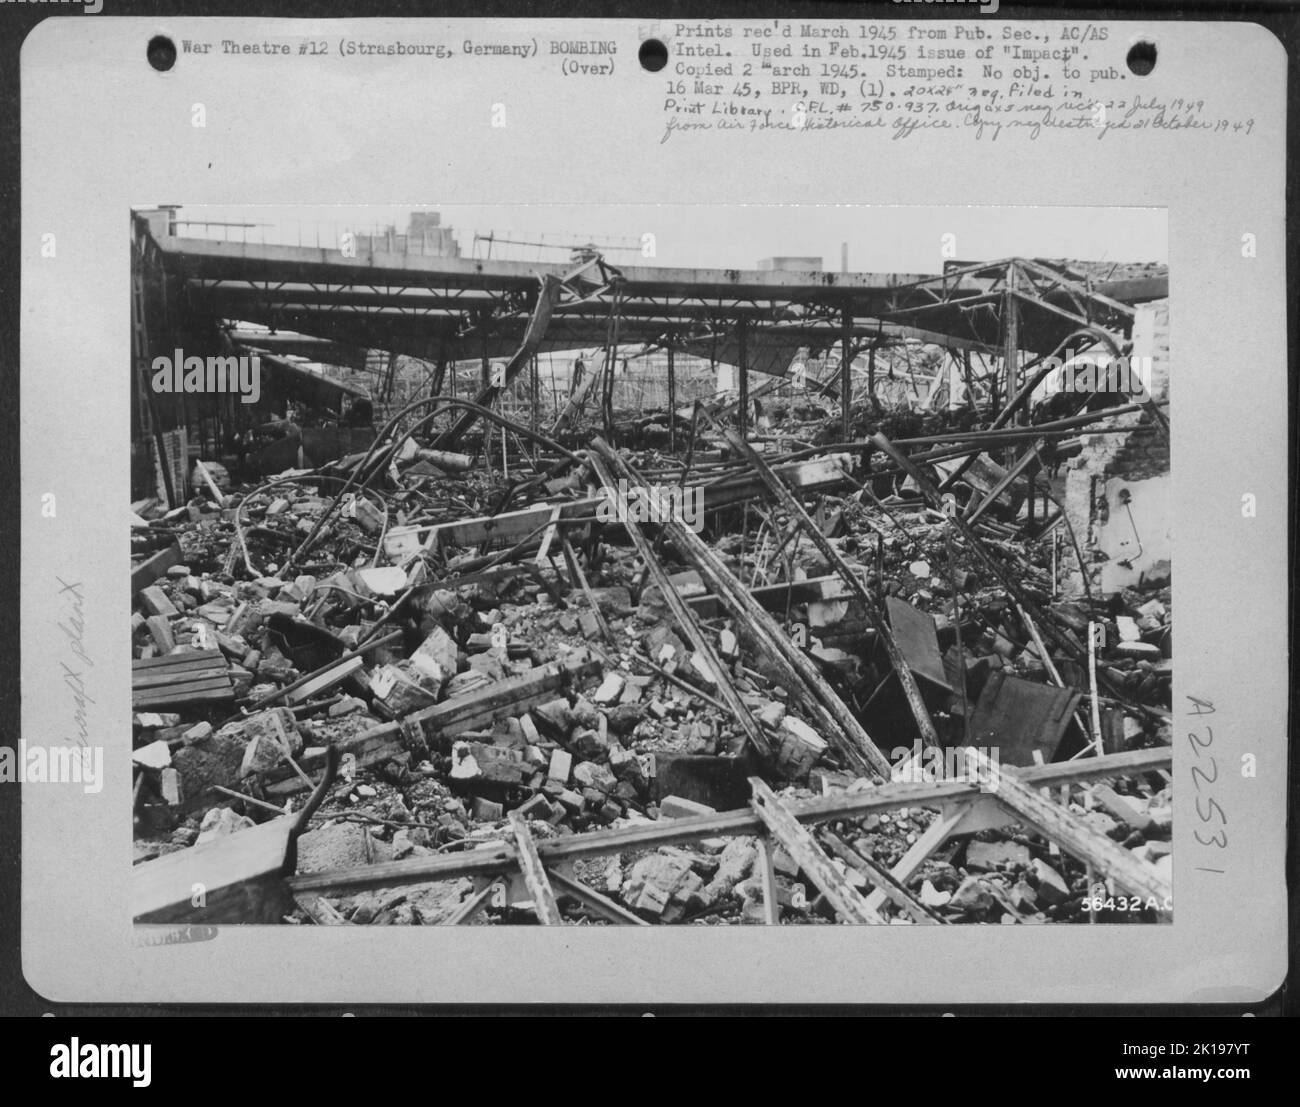 Das Matford Aero-Motorenwerk in Straßburg, Deutschland nach einem Angriff des 8. AF am 27. Mai 1944. Die elsässischen Arbeiter des Werks sagten, dass 80 der Bomben das Ziel getroffen haben und das Herz der großen Fabrik, in der Motorkomponenten hergestellt wurden, vollständig ausgeschlagen haben Stockfoto